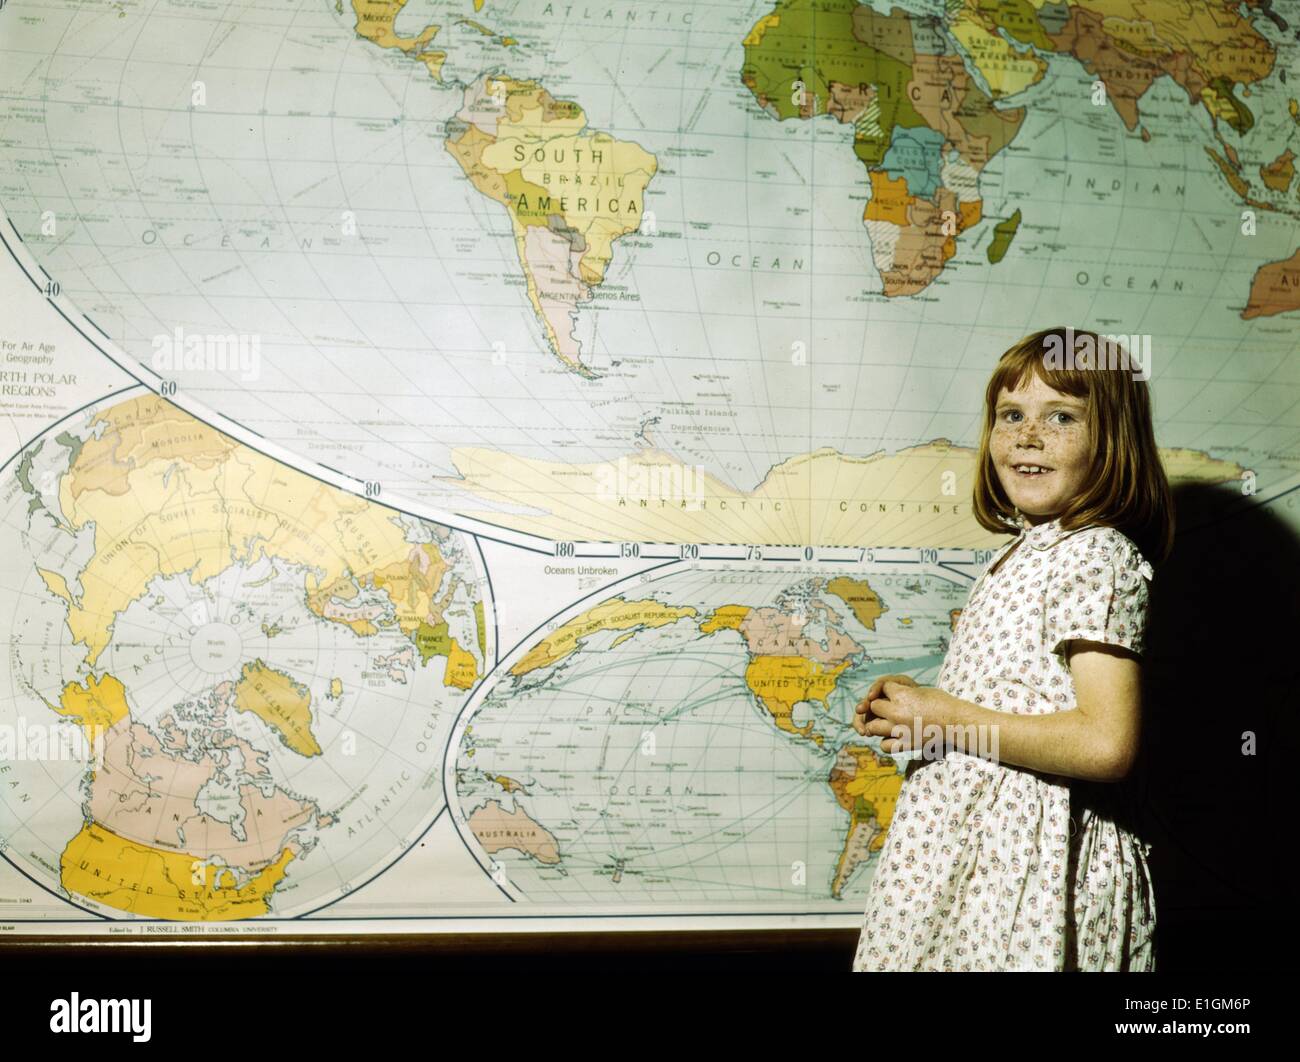 Photographie d'une fille de l'école, debout devant une carte. San Augustine County, Texas. Datée 1943 Banque D'Images